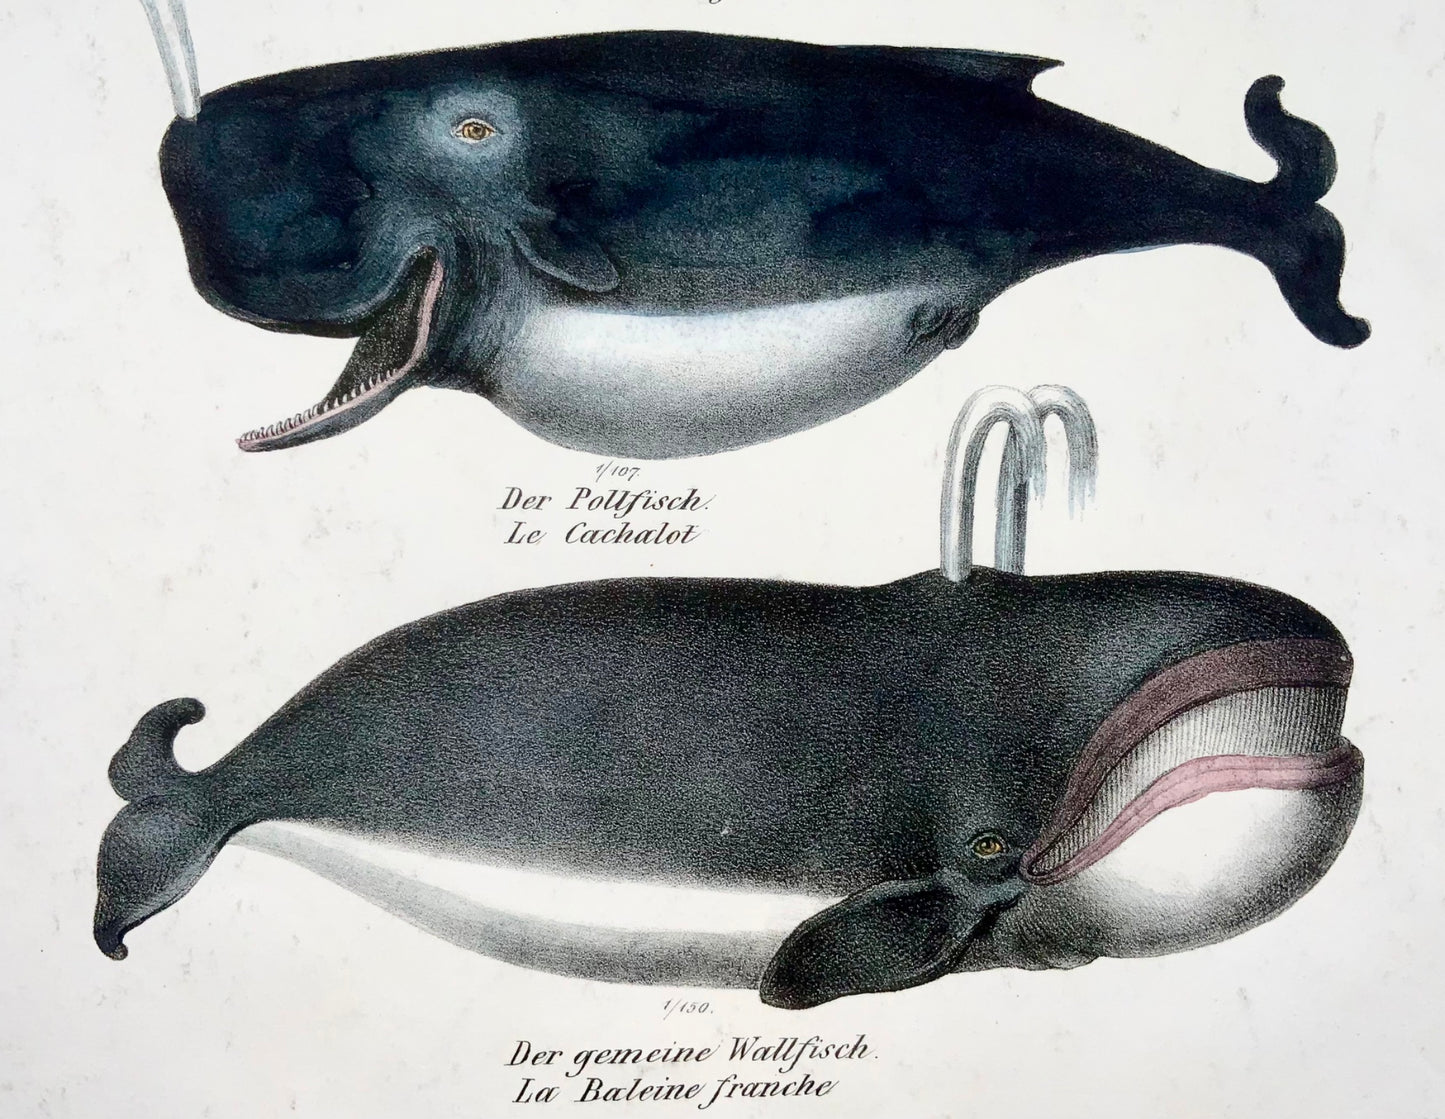 1824 Dauphins, baleines, mammifères, KJ Brodtmann, lithographie in-folio coloriée à la main